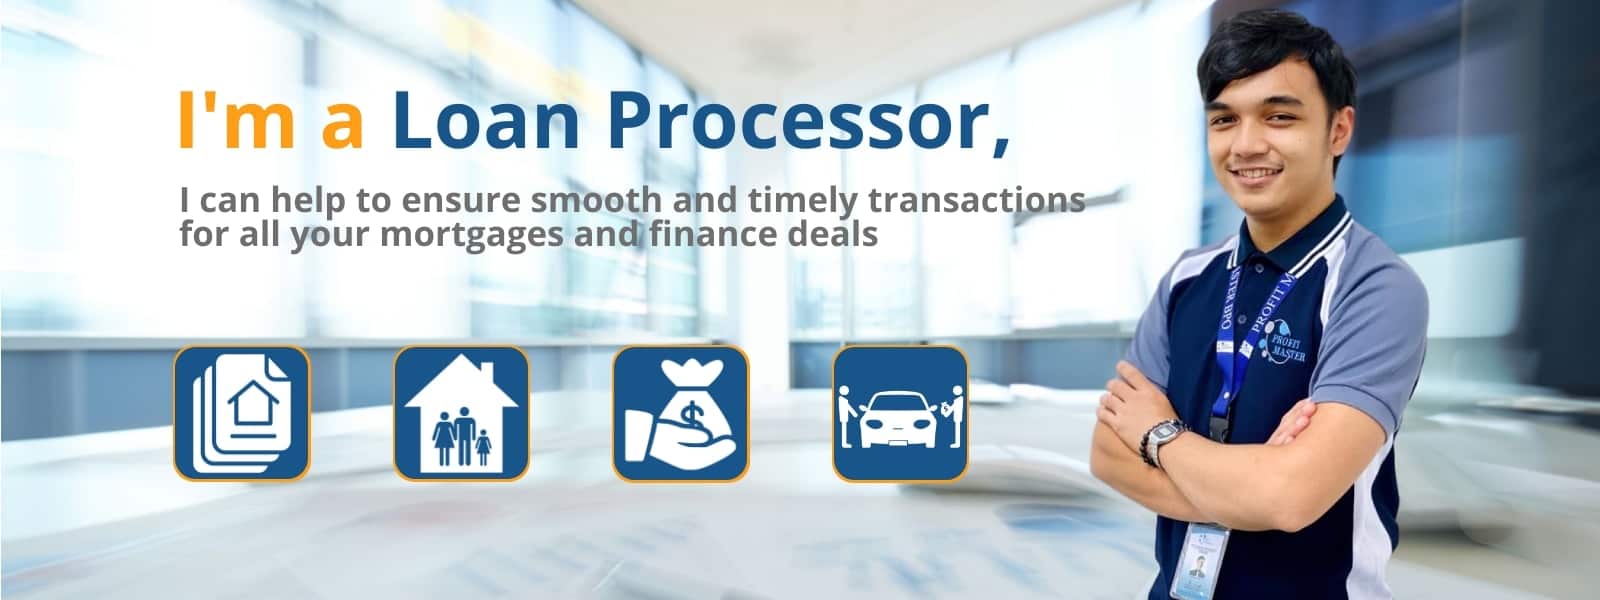 loan_processor